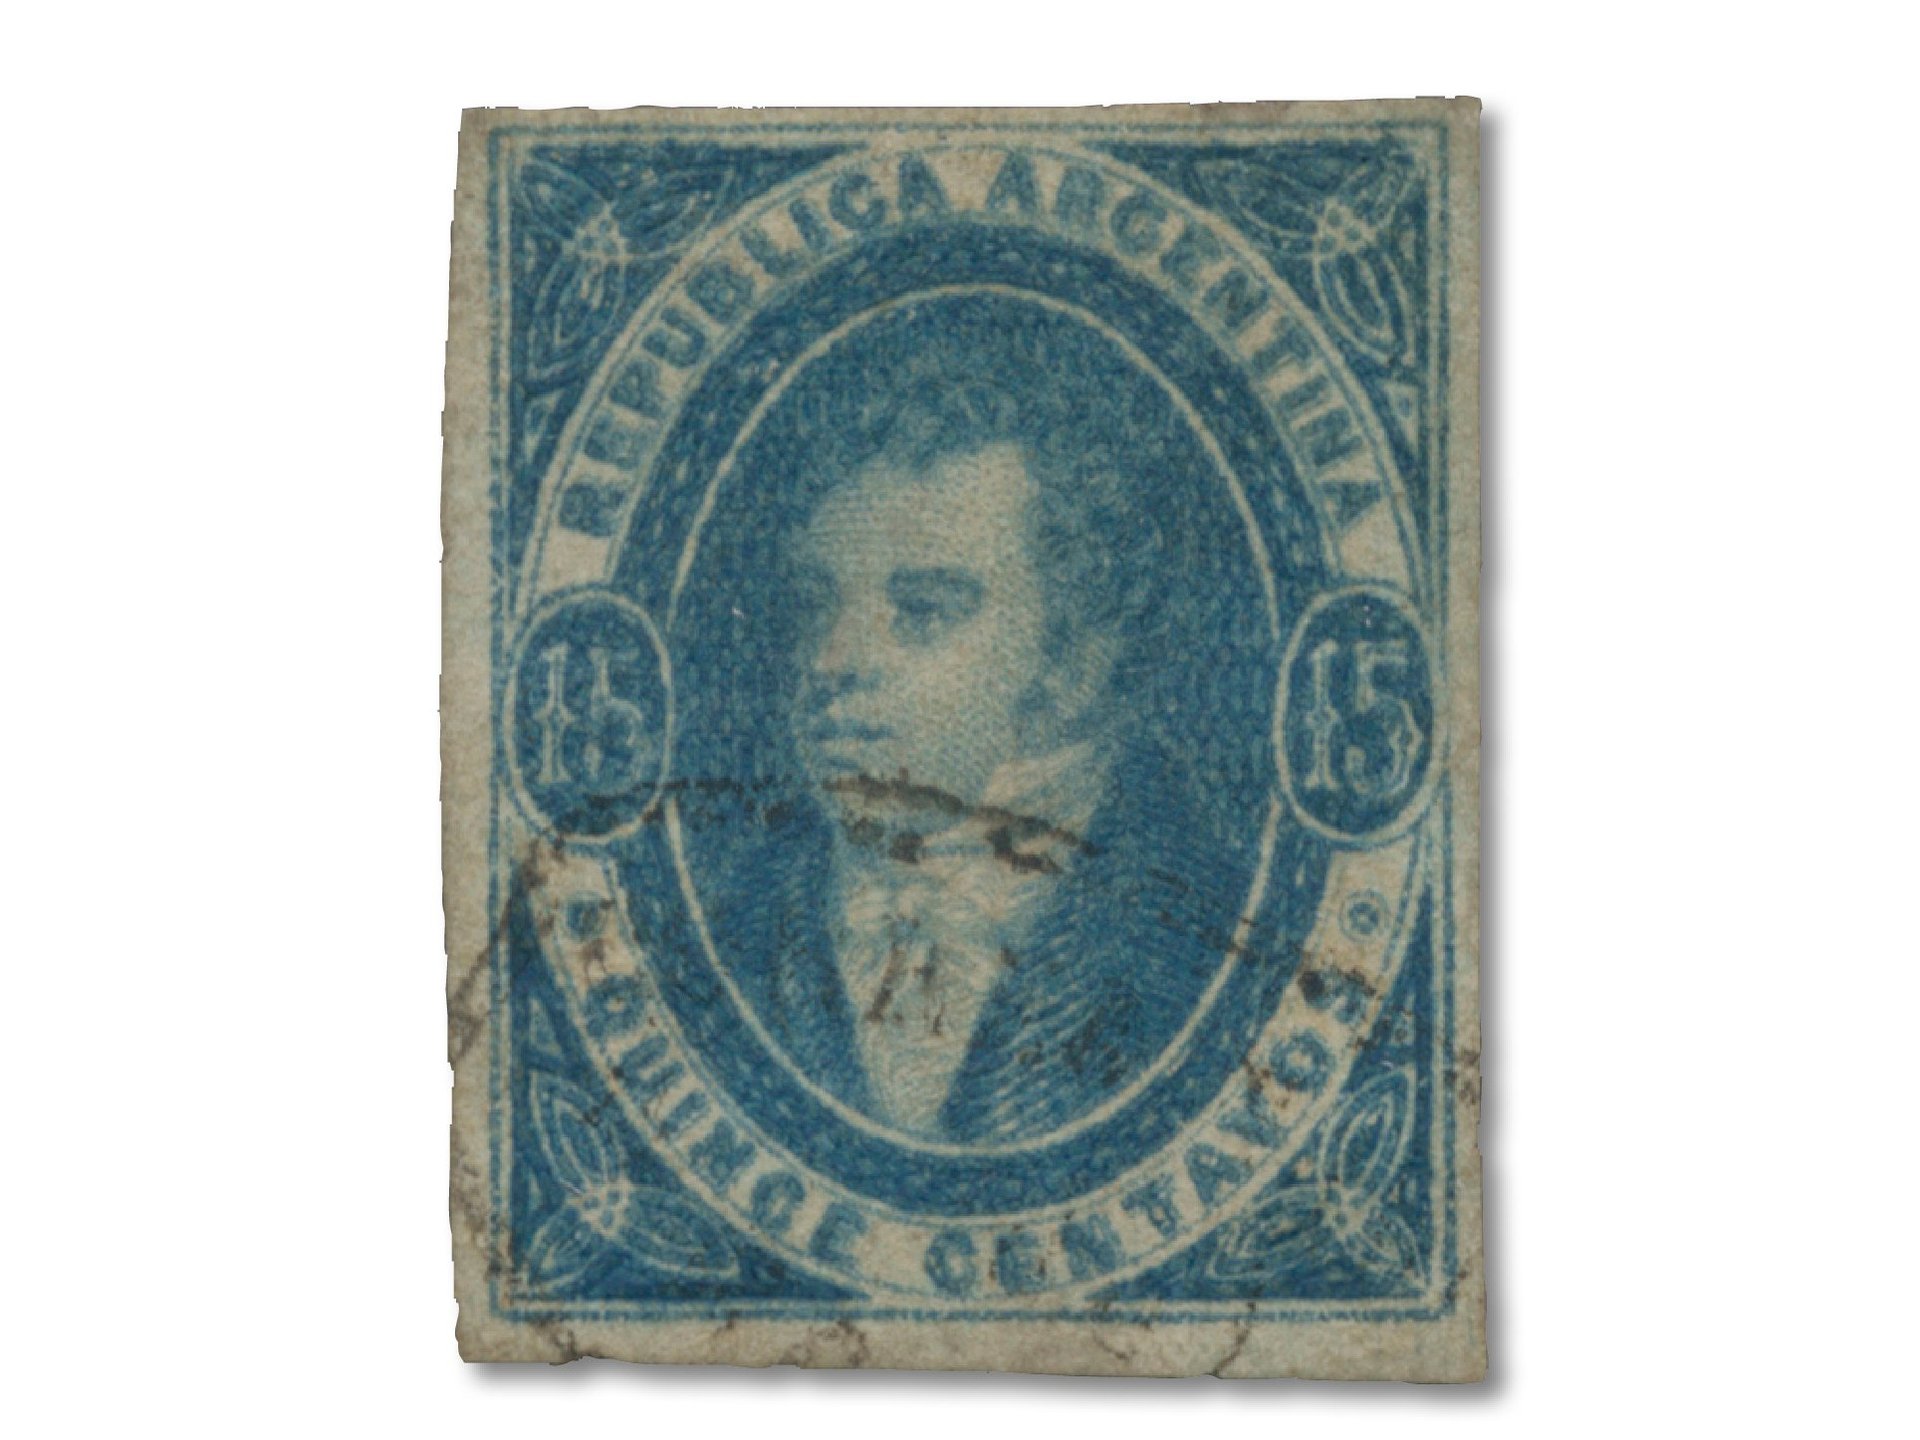 einzelne Briefmarke Argentinien von 1864 Rivadavia